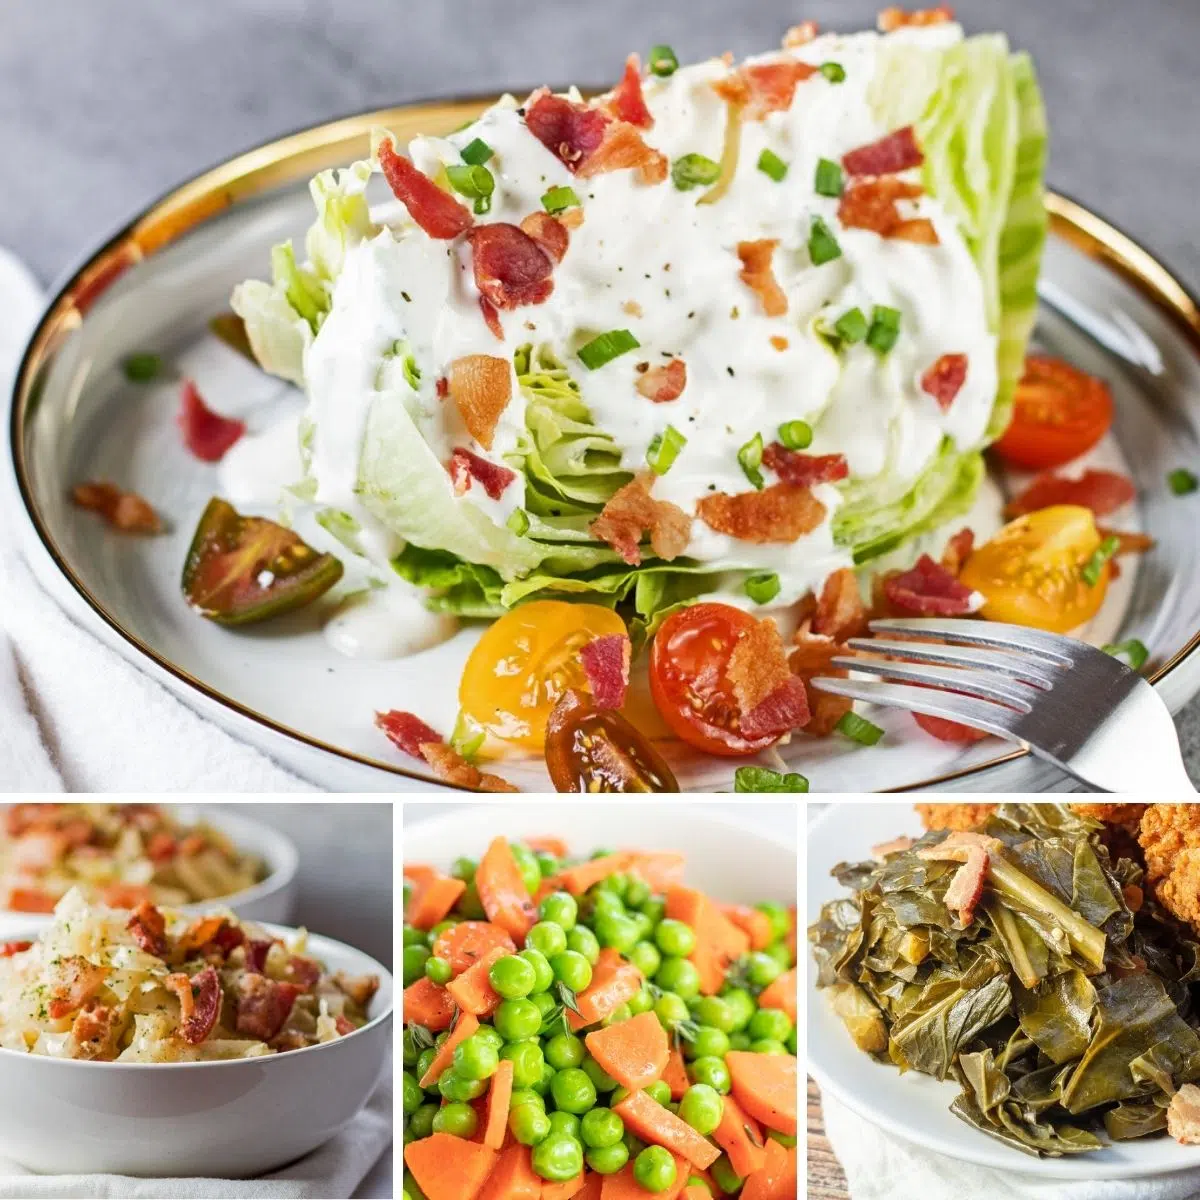 Les meilleurs plats d'accompagnement de légumes à servir avec n'importe quel repas, comme indiqué avec ces 4 recettes en vedette dans une image de collage.